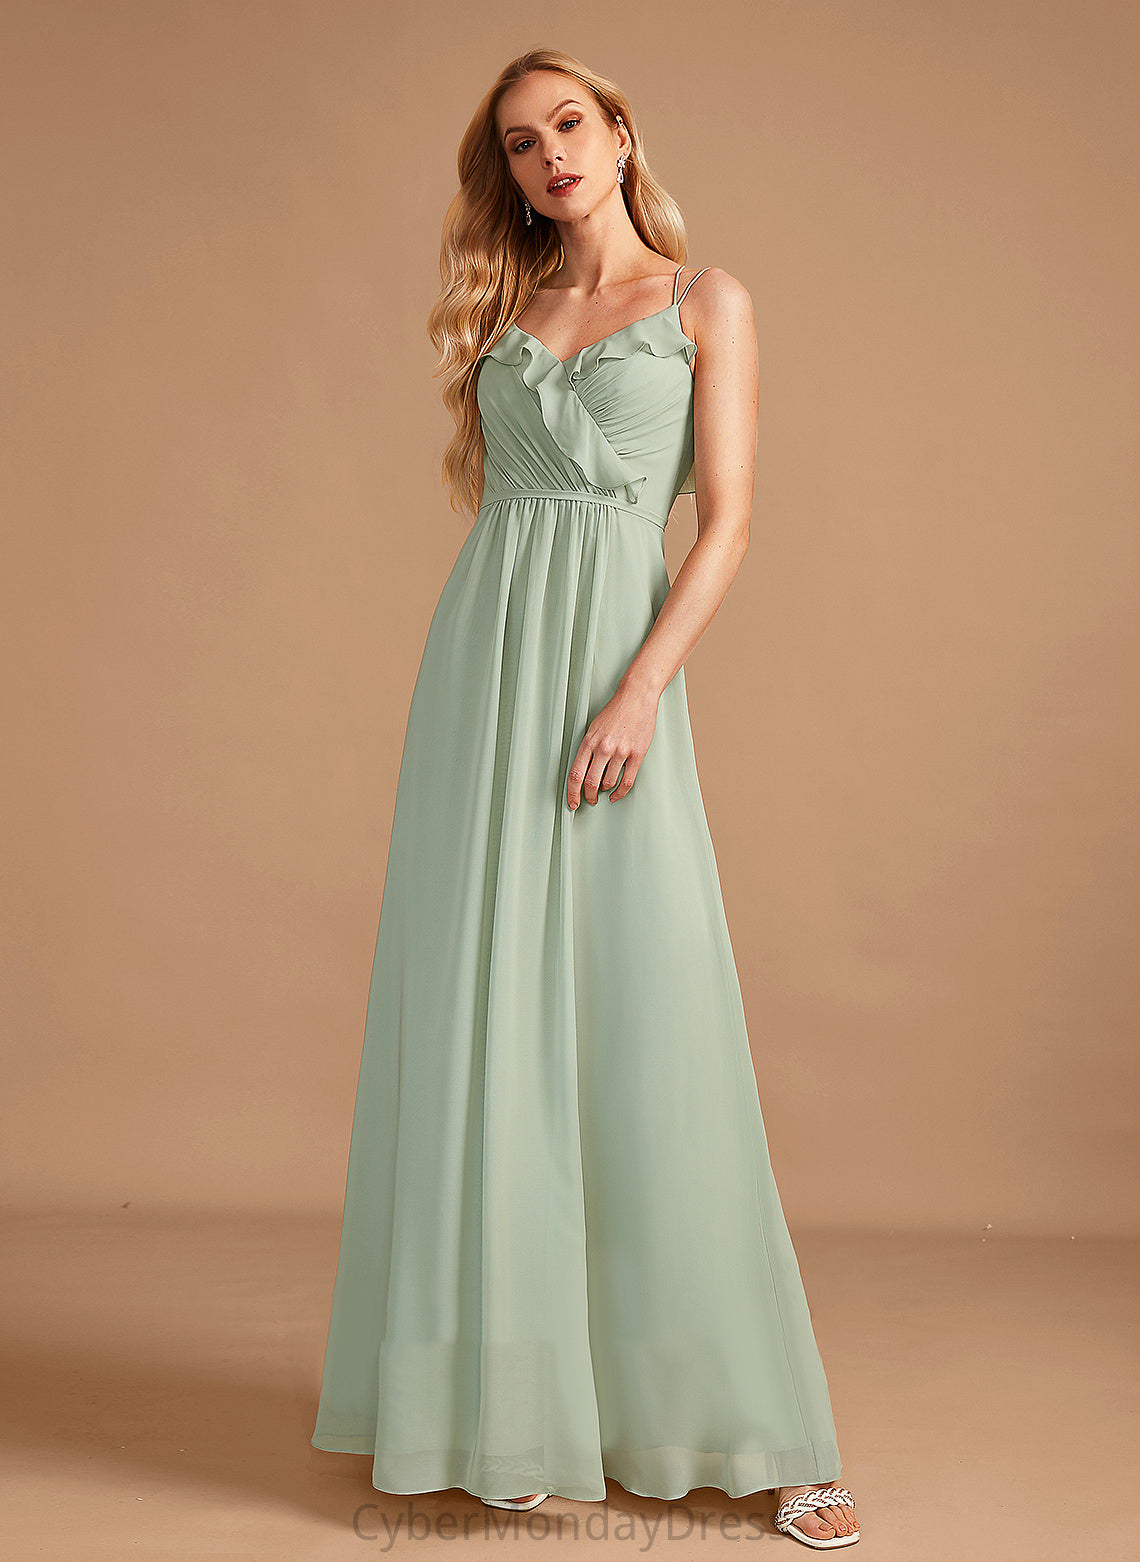 Fabric Length A-Line Neckline Floor-Length Silhouette V-neck Ruffle Embellishment Cloe Bridesmaid Dresses